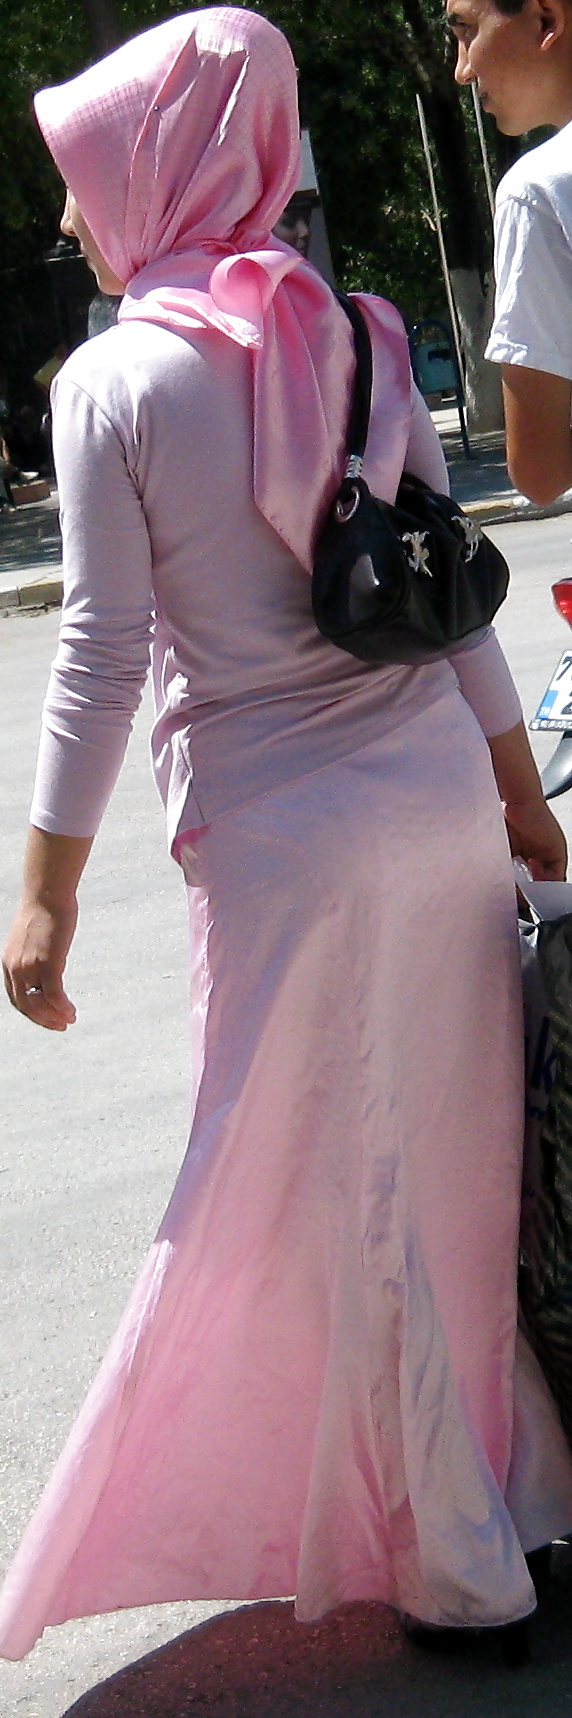 Türkisch Hijab 2011 Sonderserie #4309353